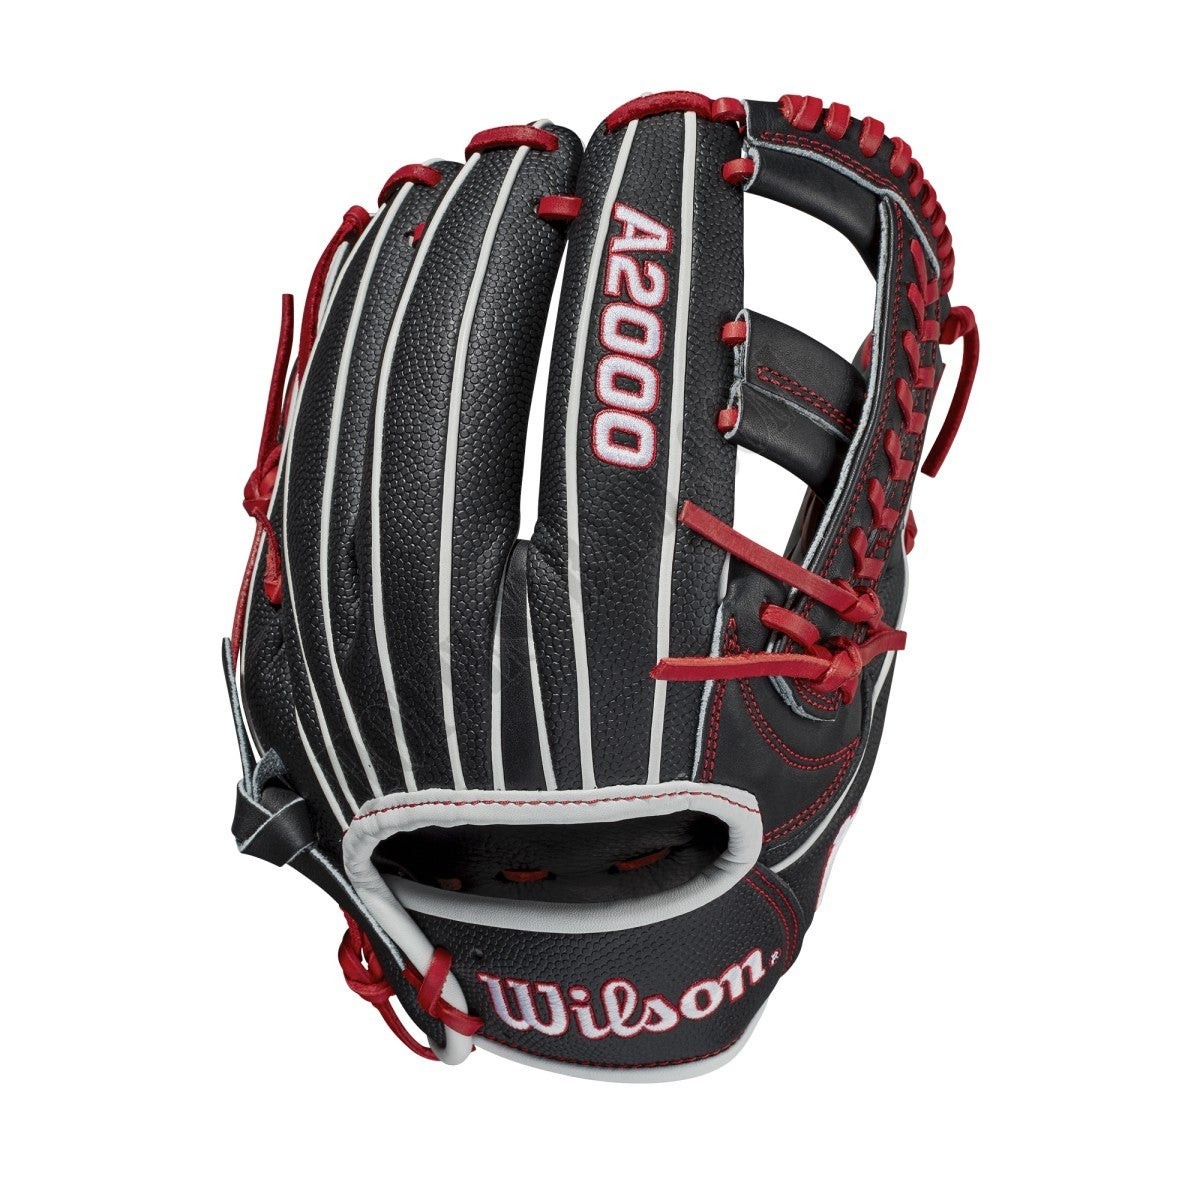 2021 A2000 1785SS 11.75" Infield Baseball Glove ● Wilson Promotions - -1